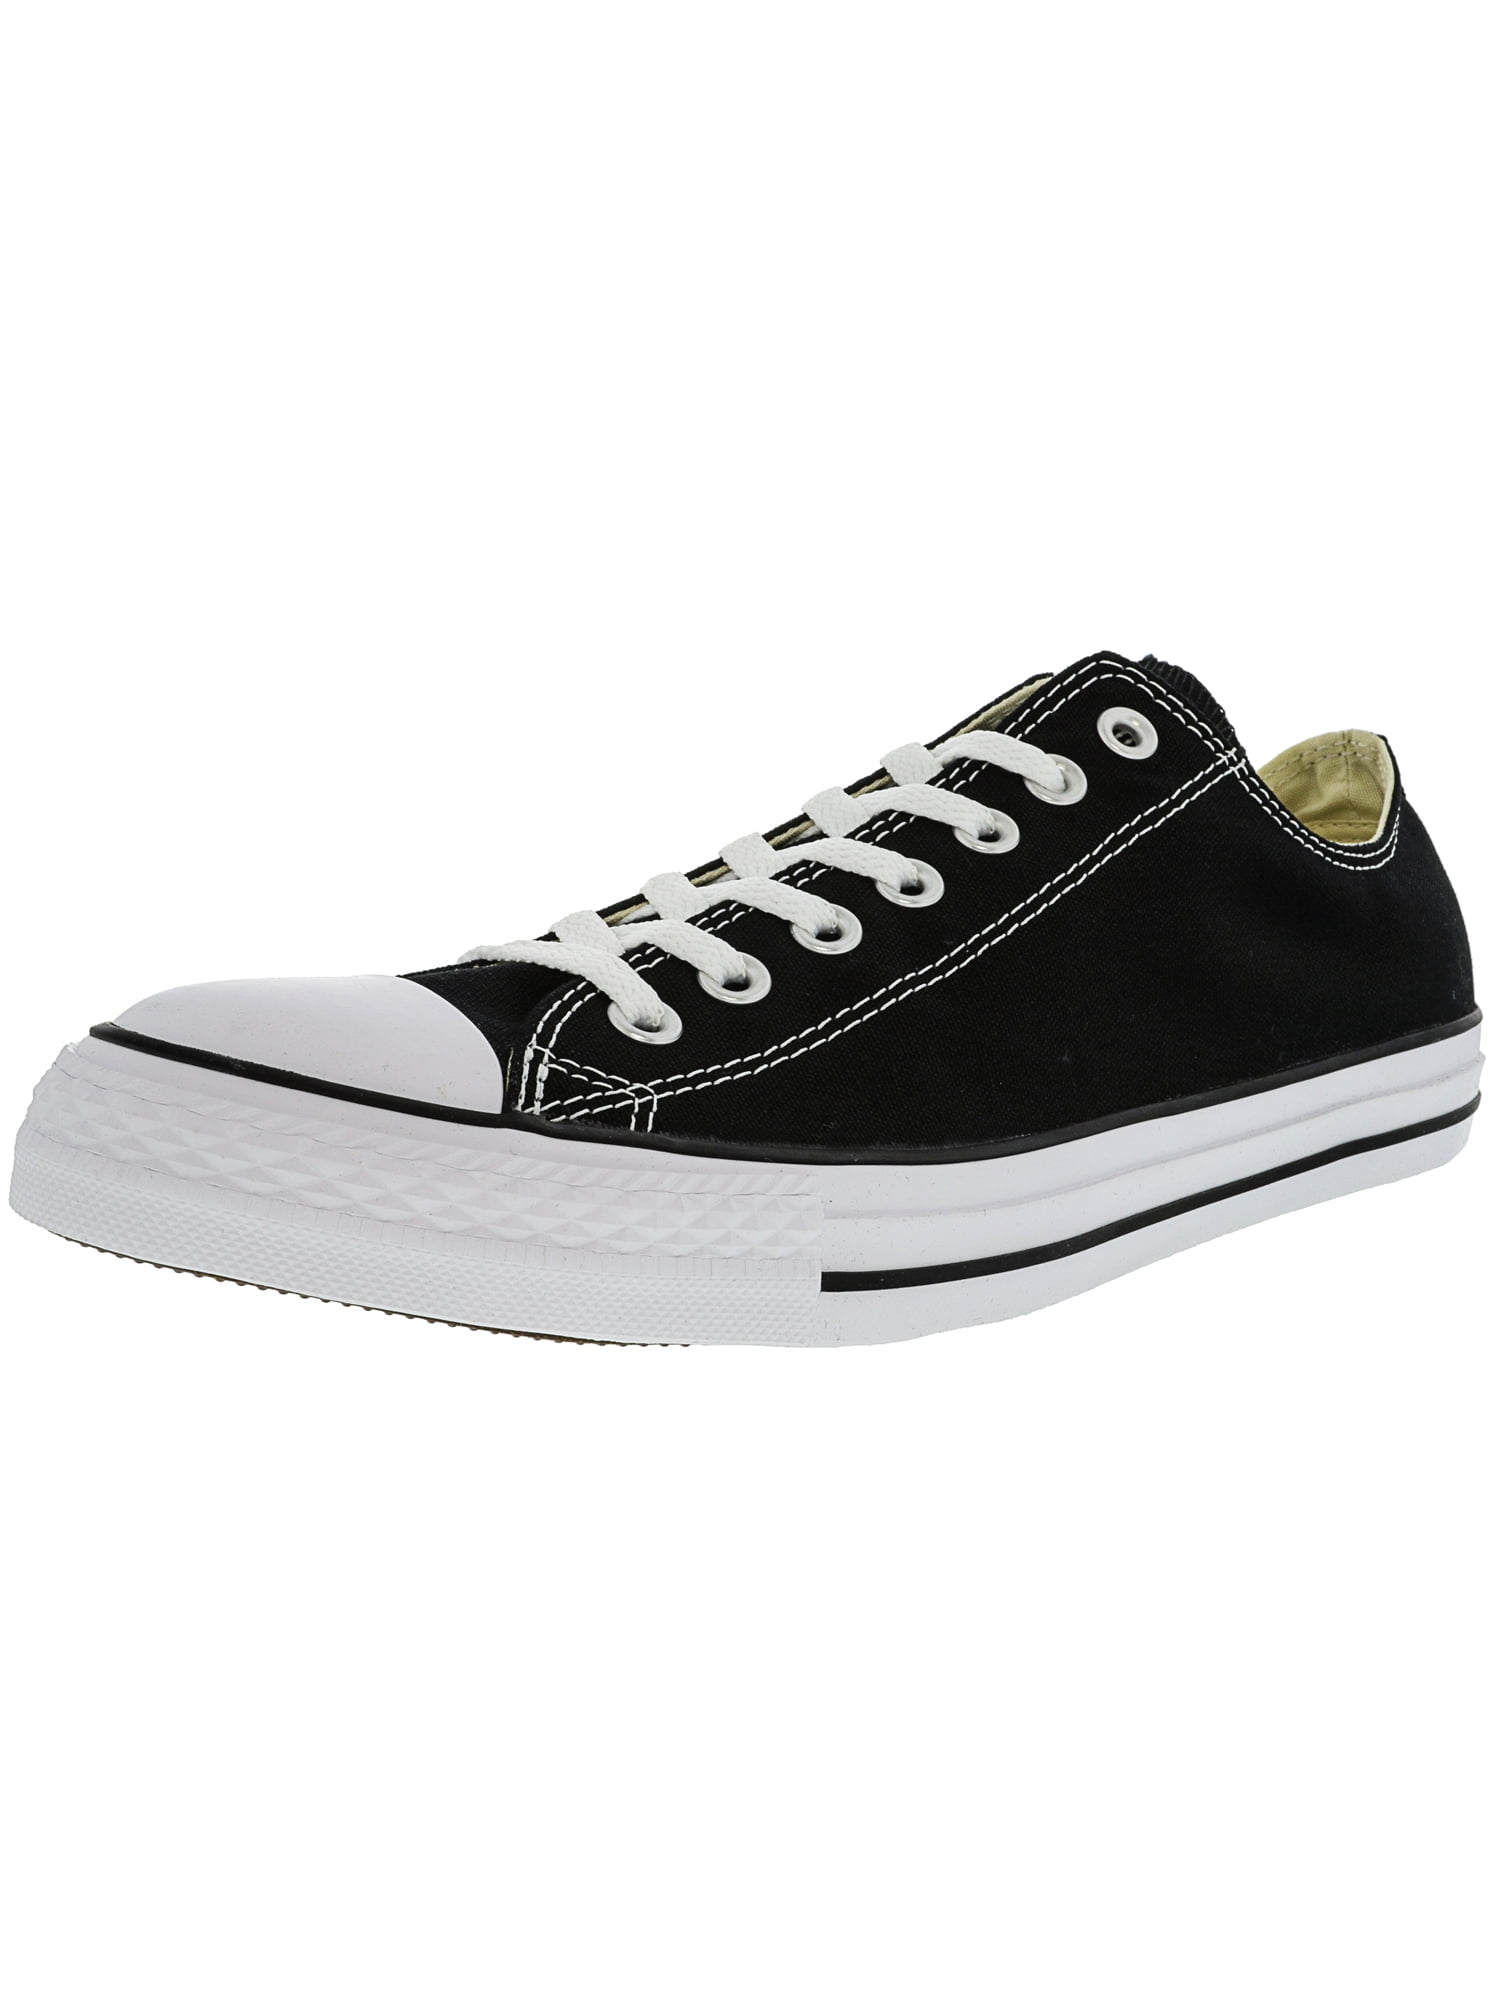 converse black ankle shoes